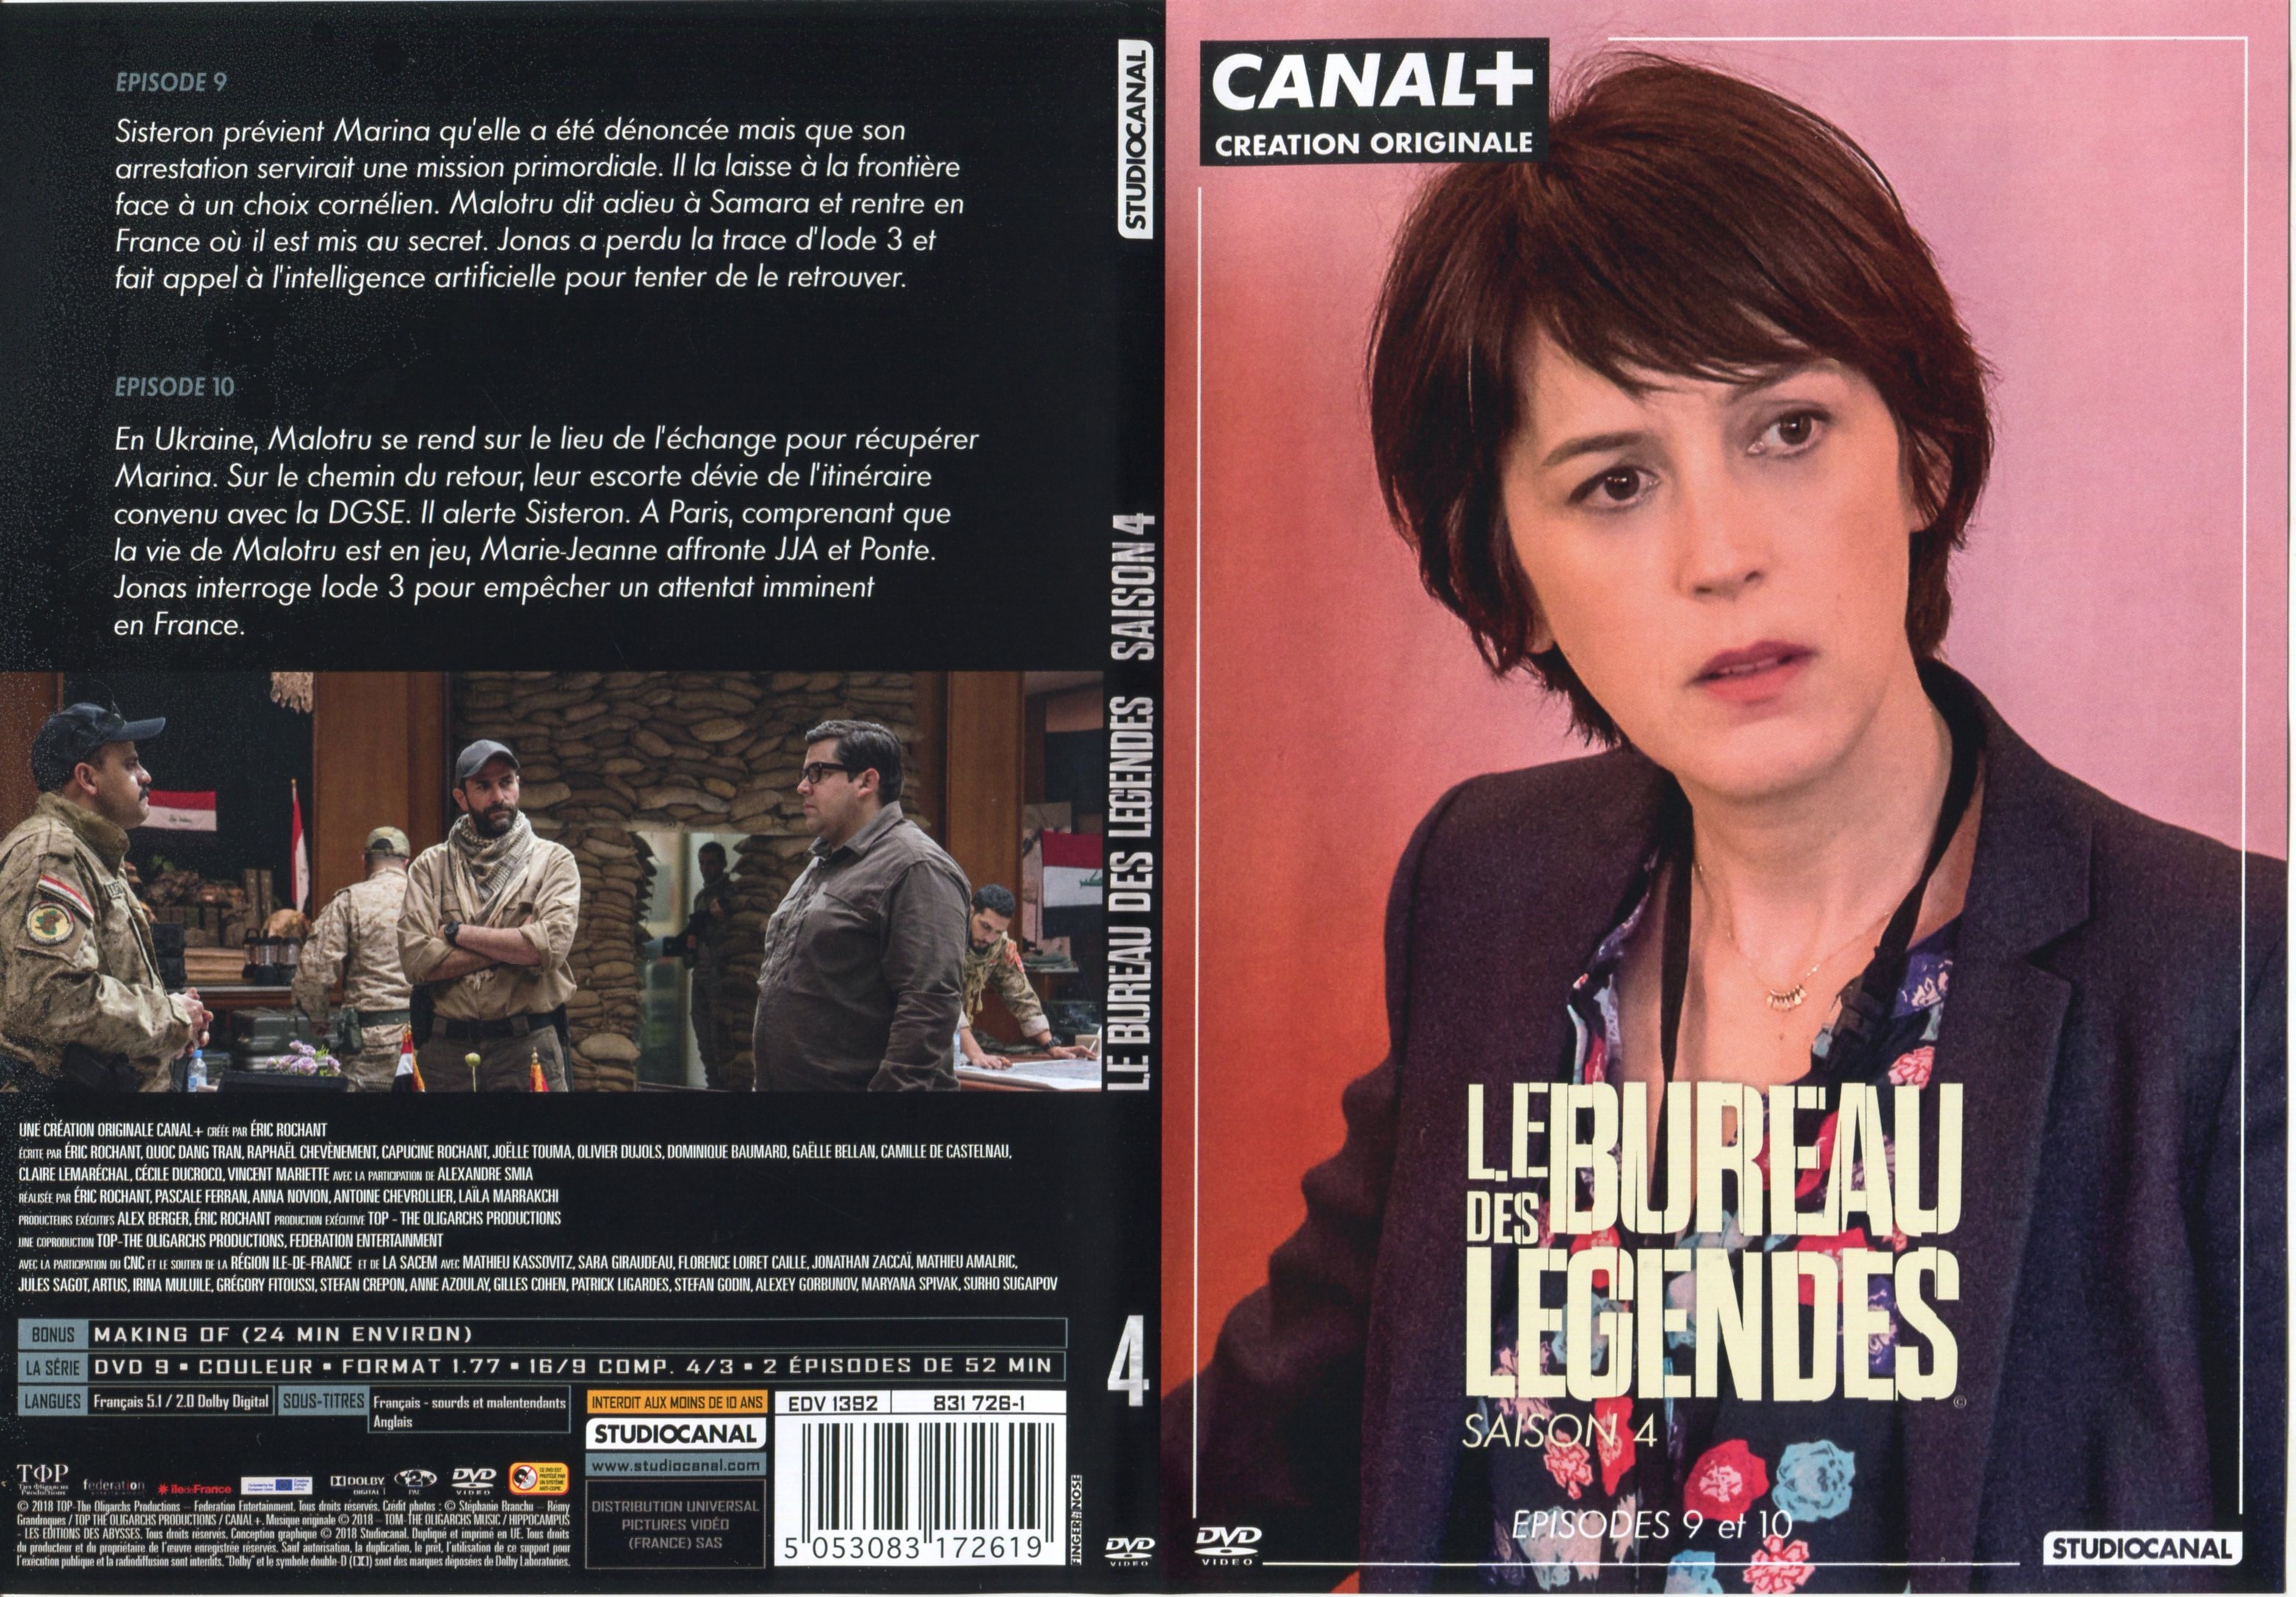 Jaquette DVD Le Bureau des Legendes Saison 4 DVD 4